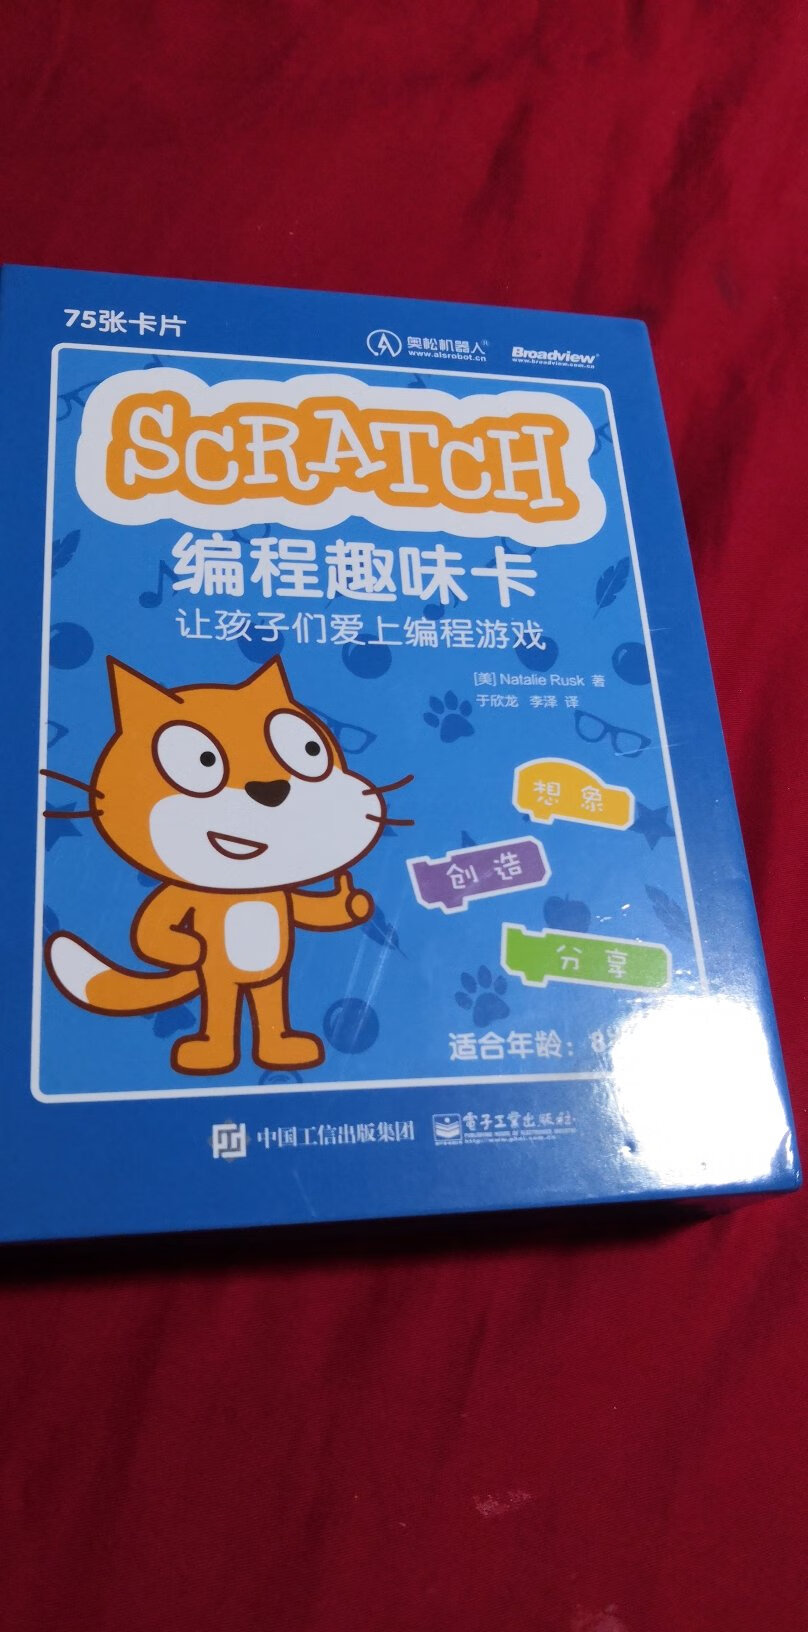 很不错的学习Scratch的编程趣味卡。